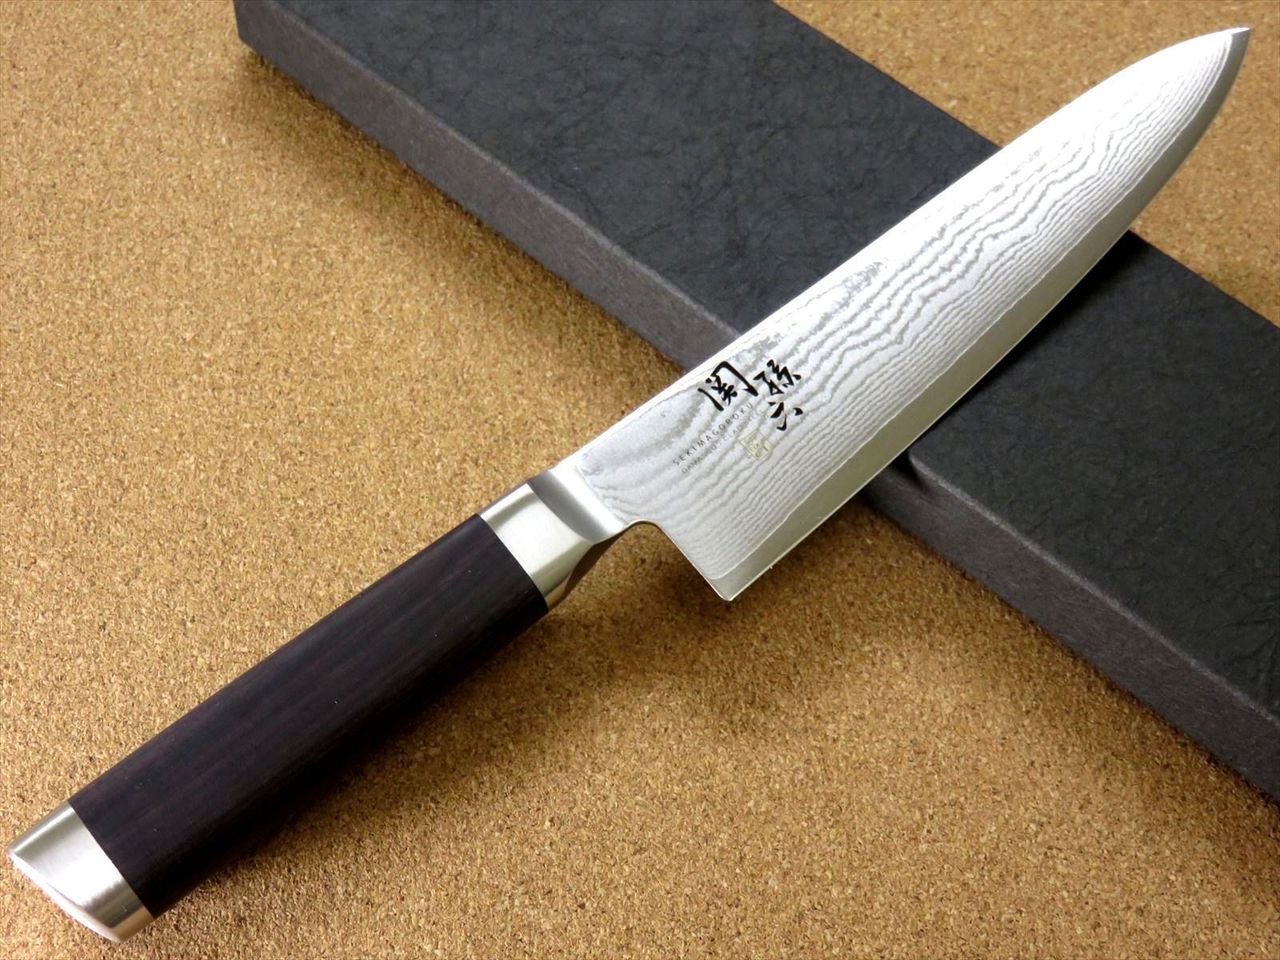 Seki Japan Kitchen Multifunctional Stainless Steel Blade Shears for Left- handed